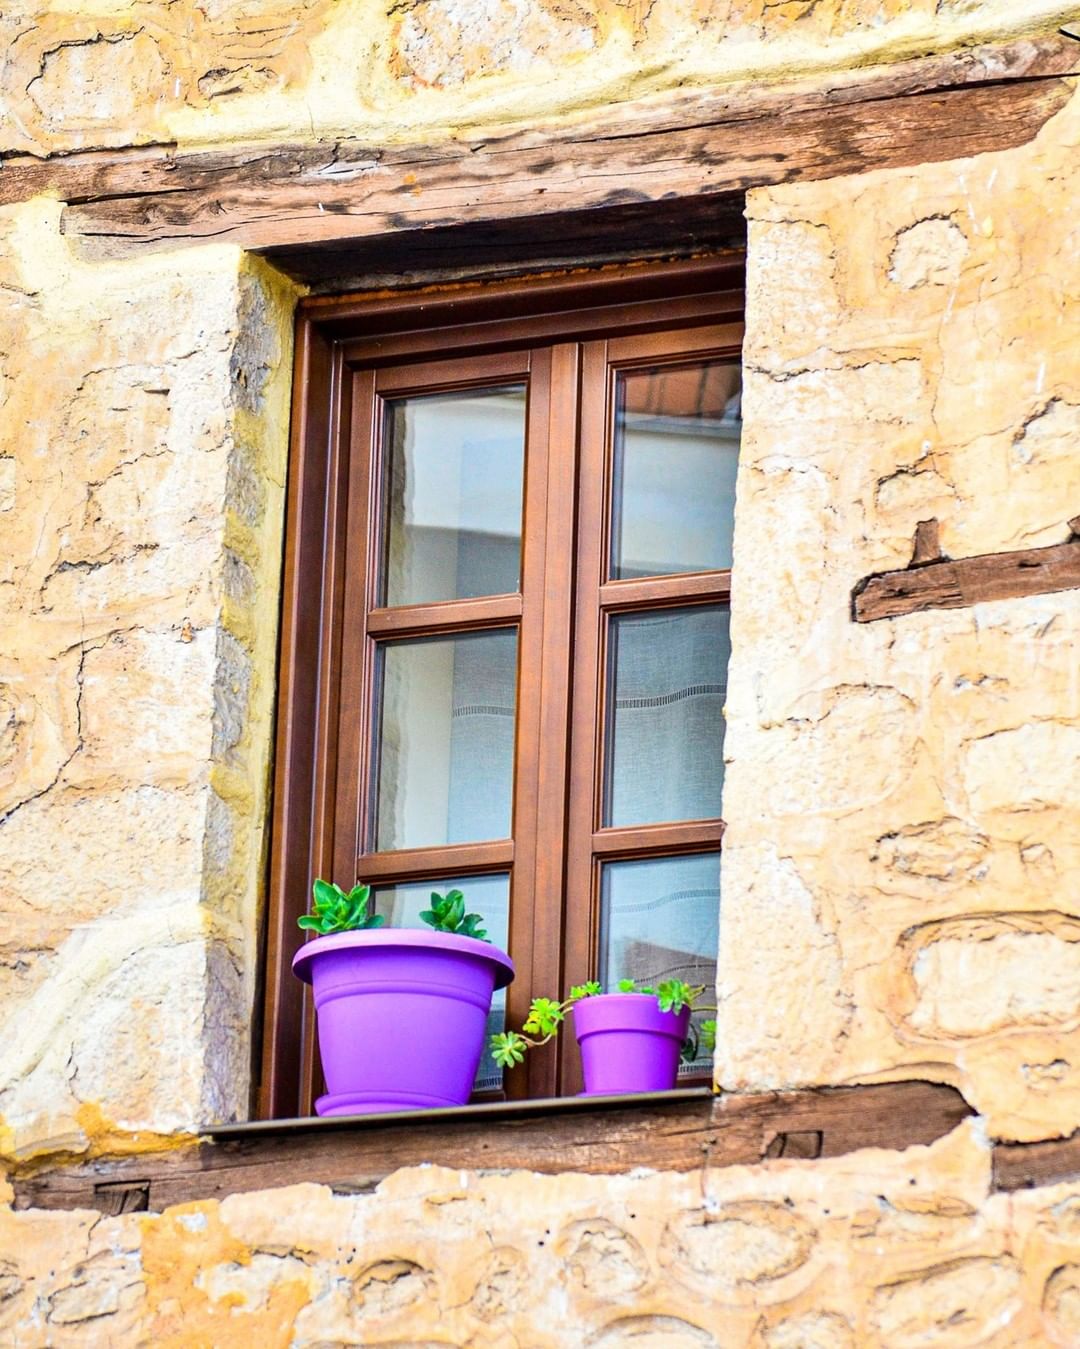 ❈ Little details make Kastoria captivating!

/ 𝒀𝒐𝒖 𝒂𝒓𝒆 𝒉𝒆𝒓𝒆 /

__
#kastoriayouar…